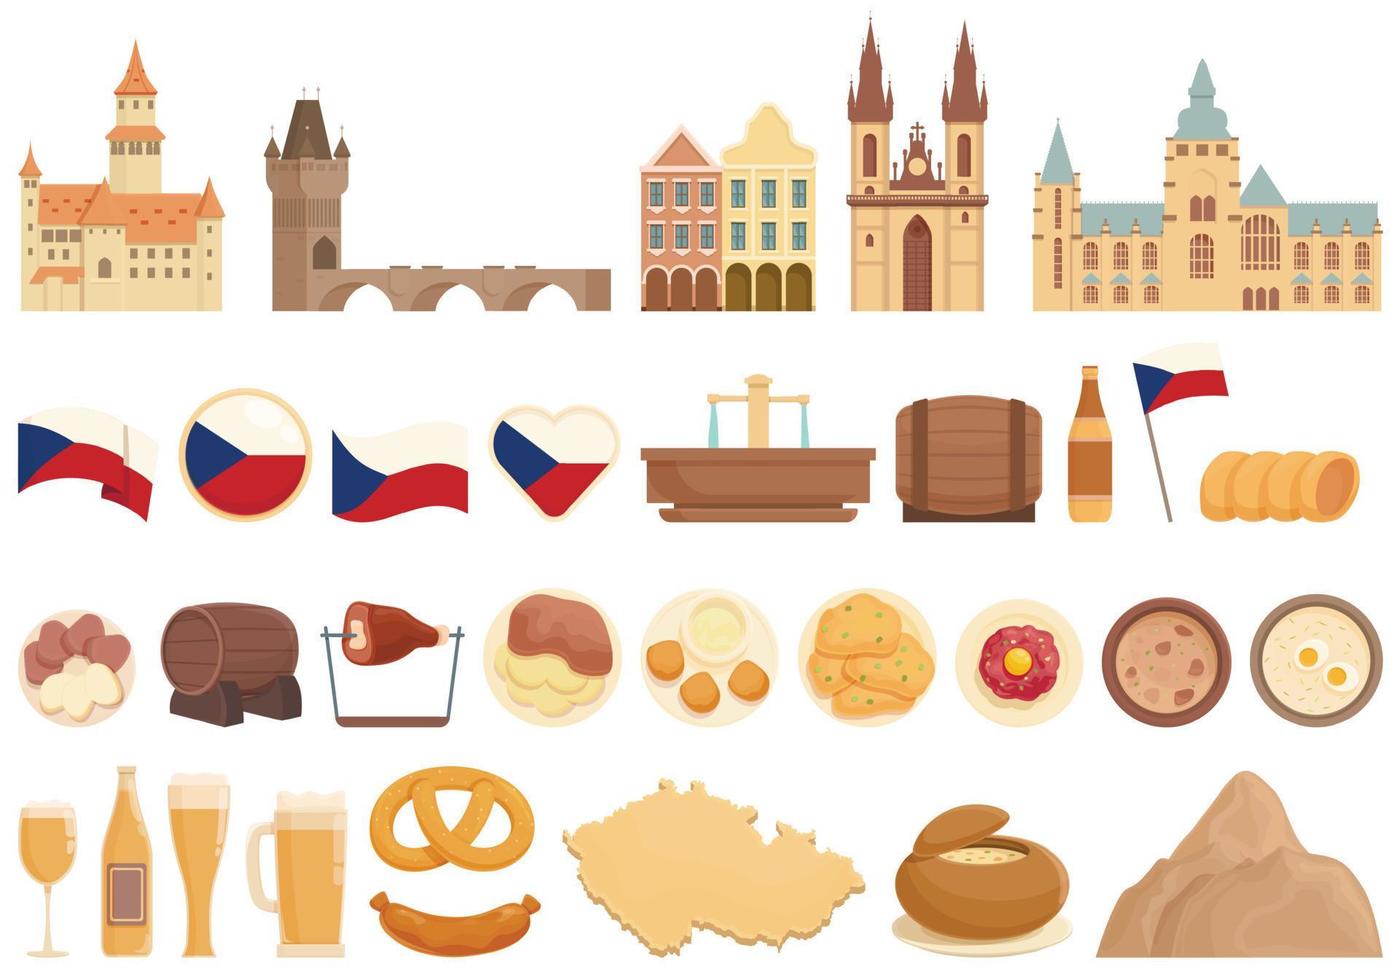 iconos de la república checa establecen vector de dibujos animados. horizonte de praga